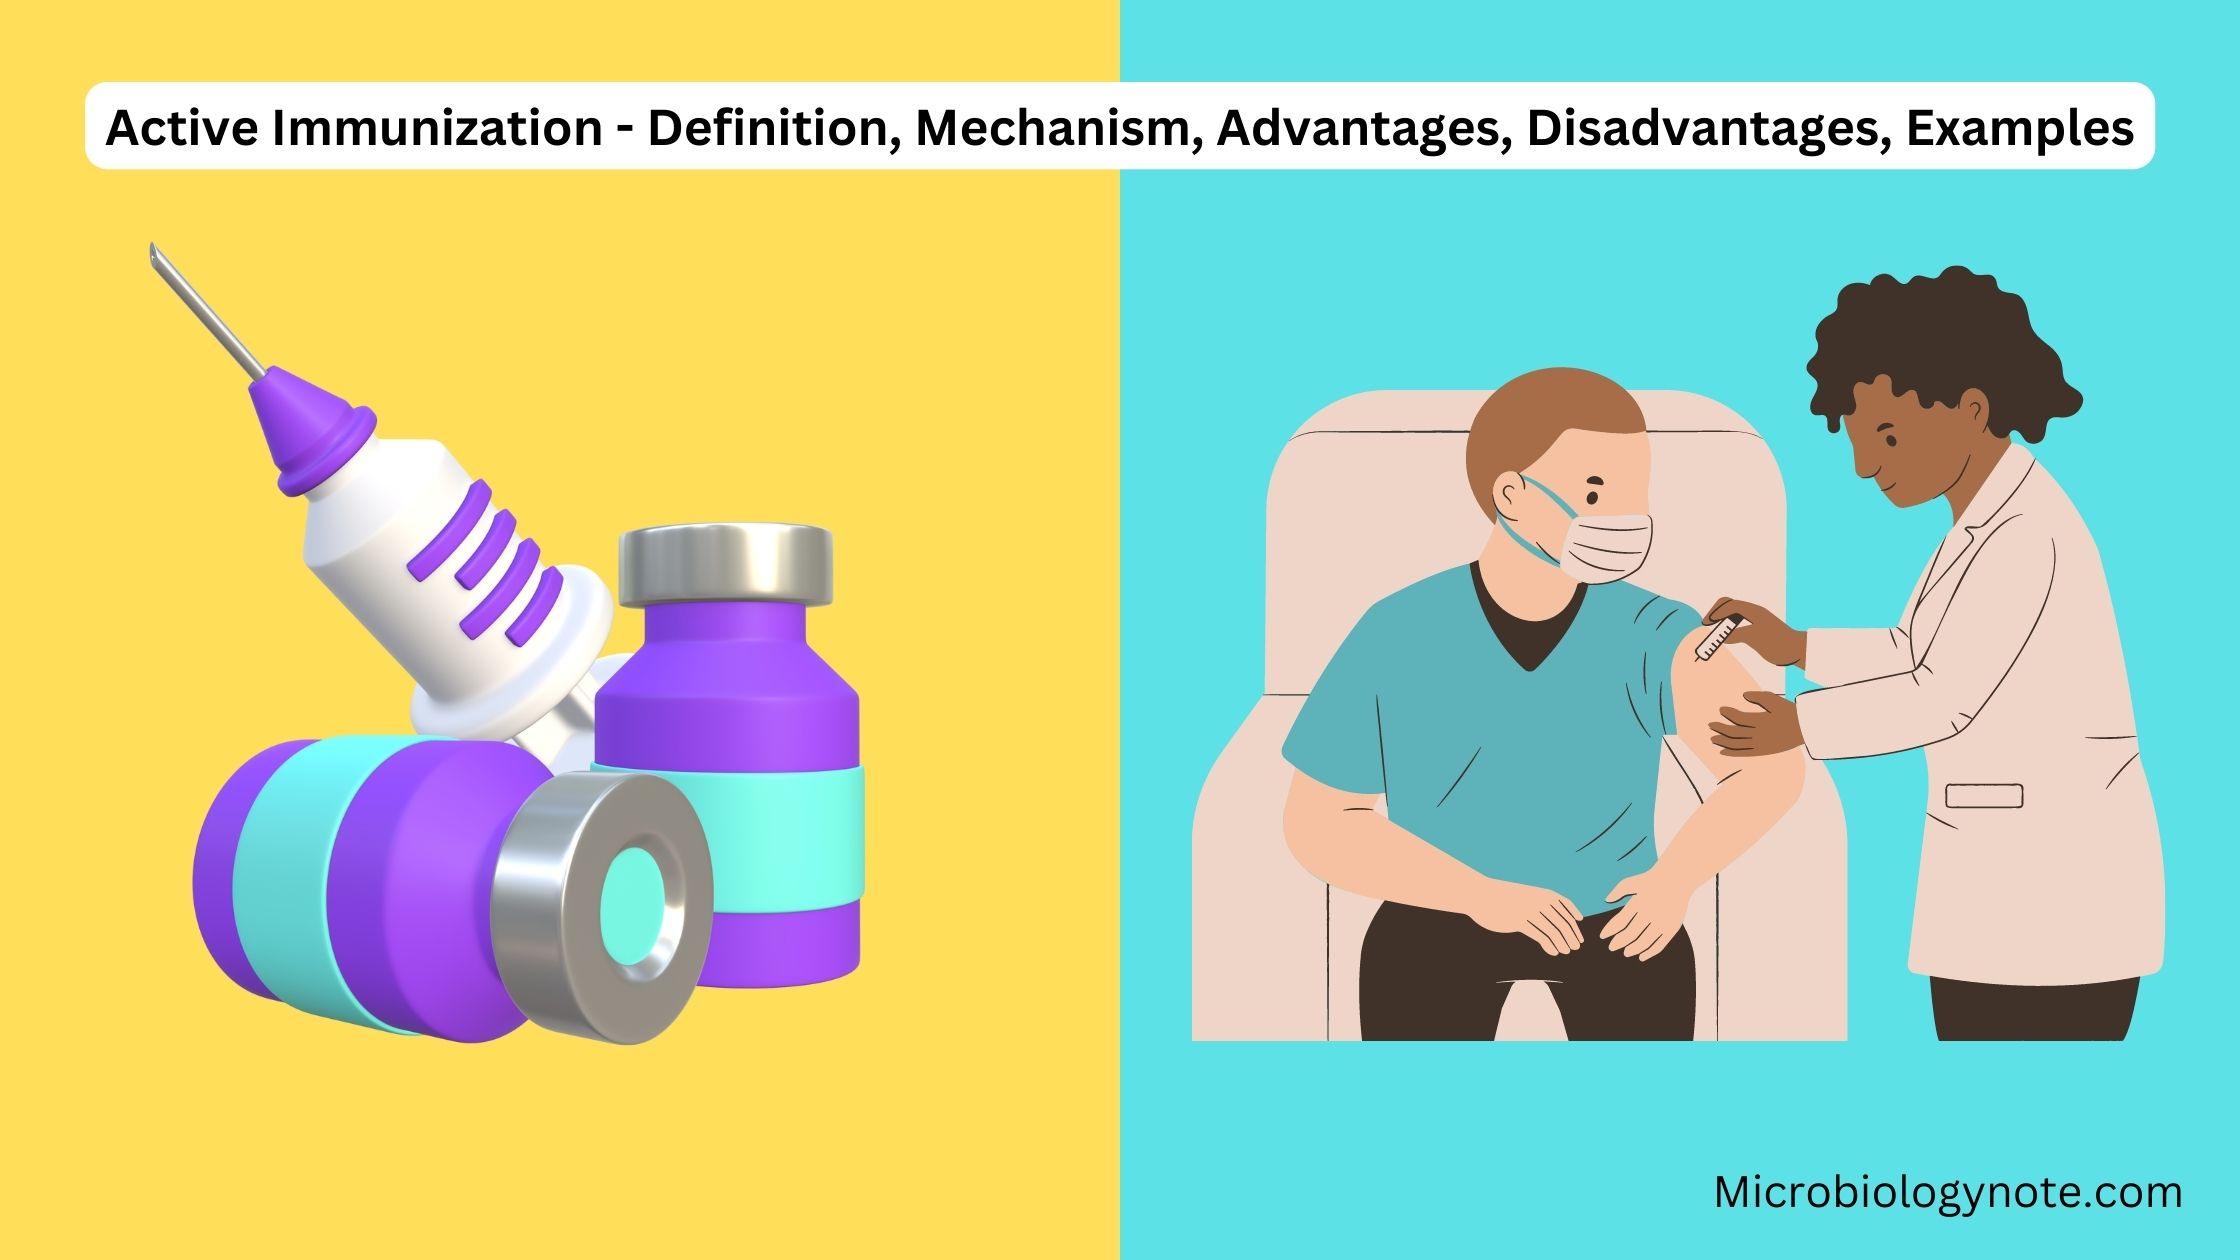 Active Immunization - Definition, Mechanism, Advantages, Disadvantages, Examples